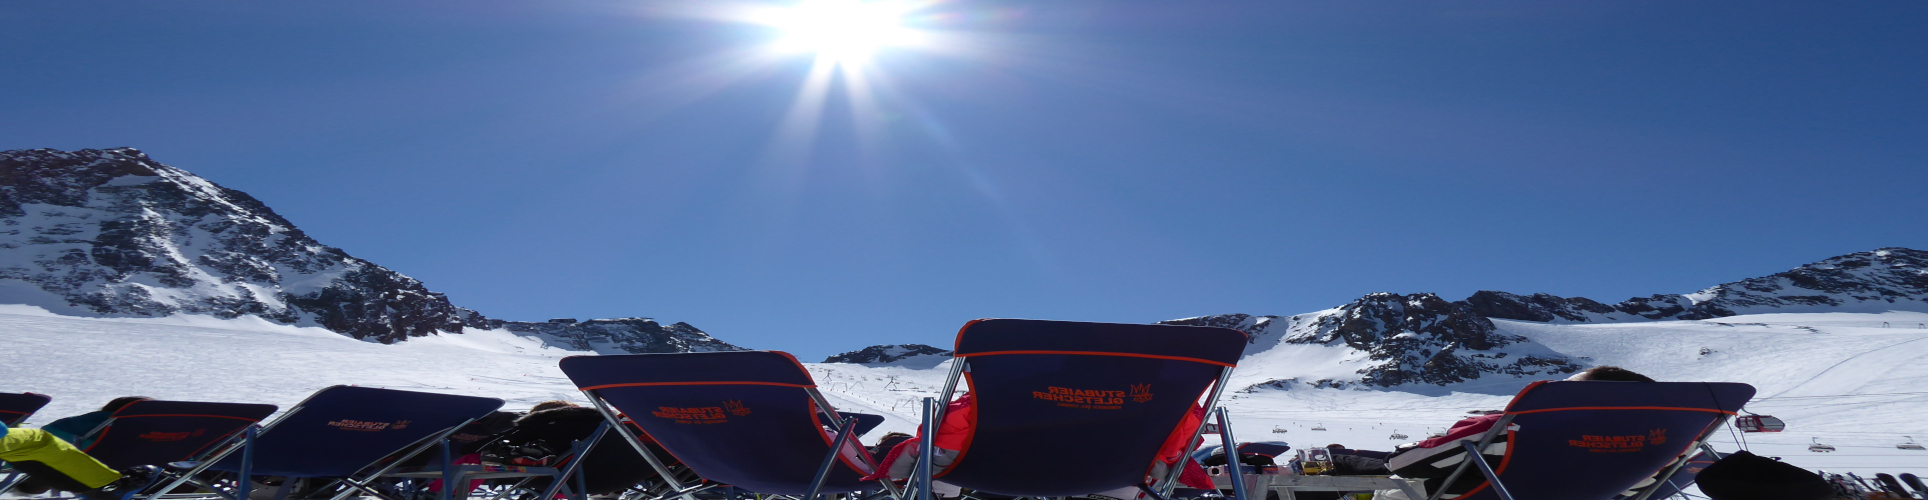 STUBAIER GLETSCHER – Skiwochenende – mit absoluter Schneegarantie – auch im 4 Sterne Hotel – ab Freitag Früh 